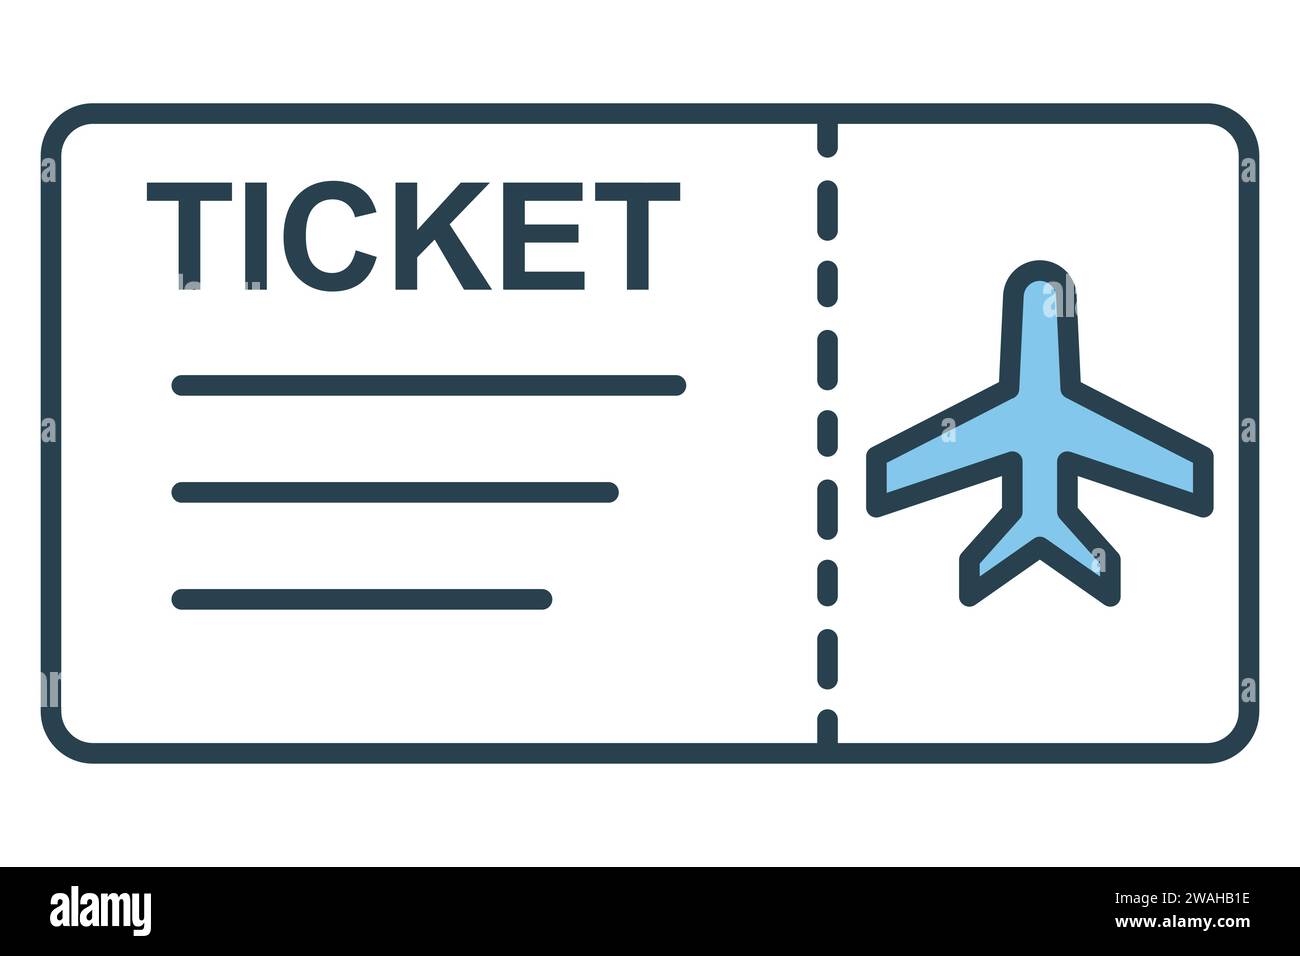 Aeroplane ticket Banque d'images détourées - Page 3 - Alamy